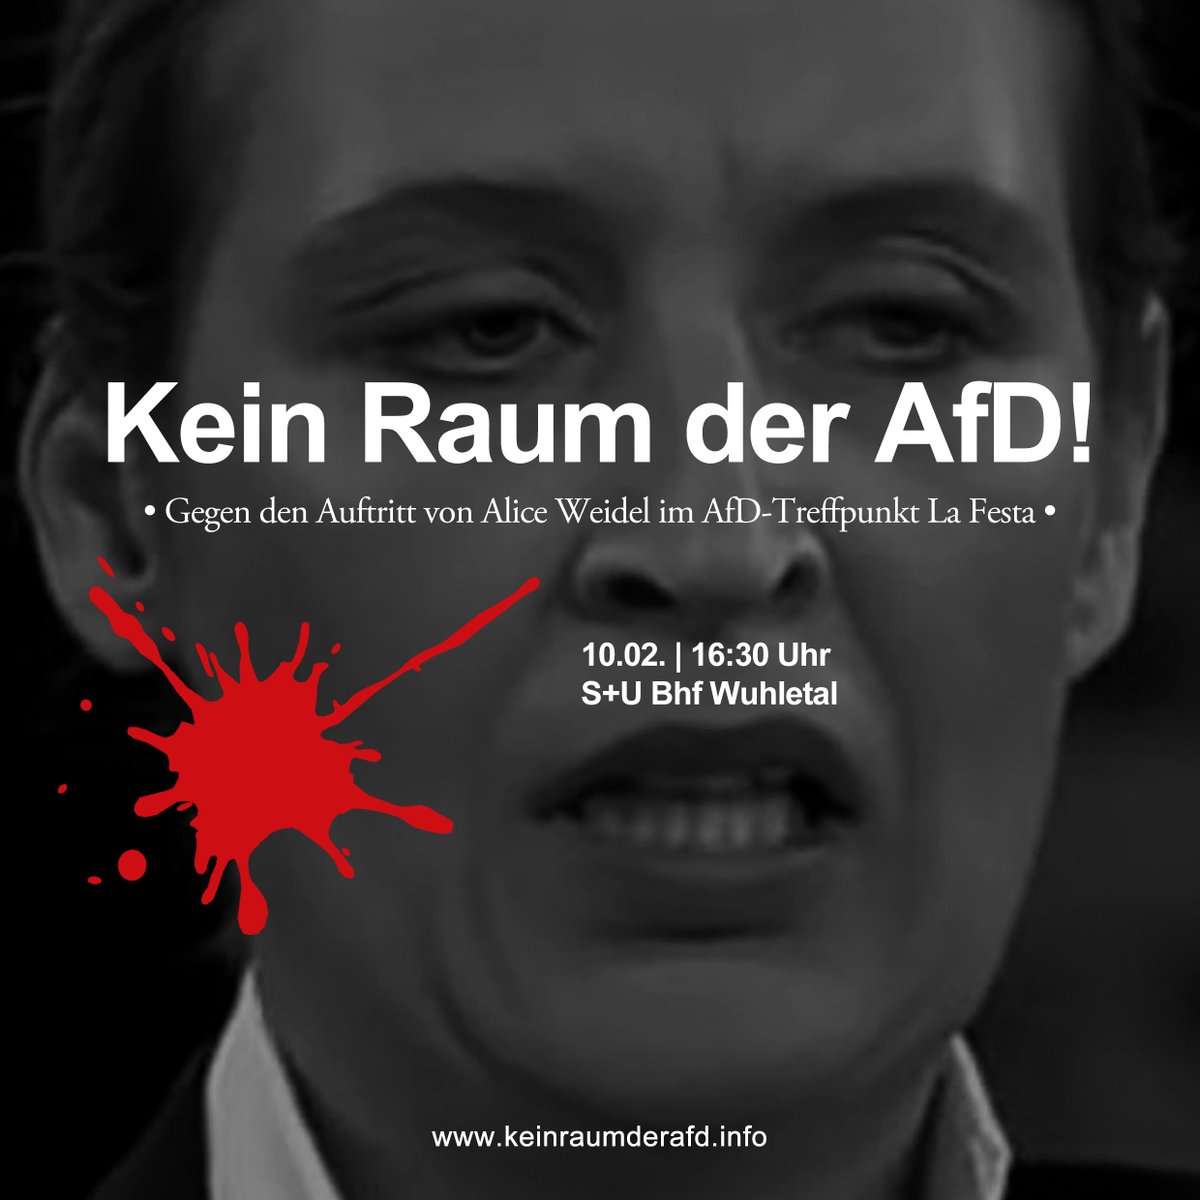 ❌ Der AfD die Party im #LaFesta vermiesen!

Kommt zum antifaschistischen Gegenprotest gegen den Auftritt von Alice Weidel im #AfD-Treffpunkt 'La Festa Eventsaal' am Freitag den 10. Februar!

❌Treffpunkt:
Fr, 10.02. | 16:30 Uhr
S+U Bhf Wuhletal

#noAFD #KeinRaumderAFD #noWeidel